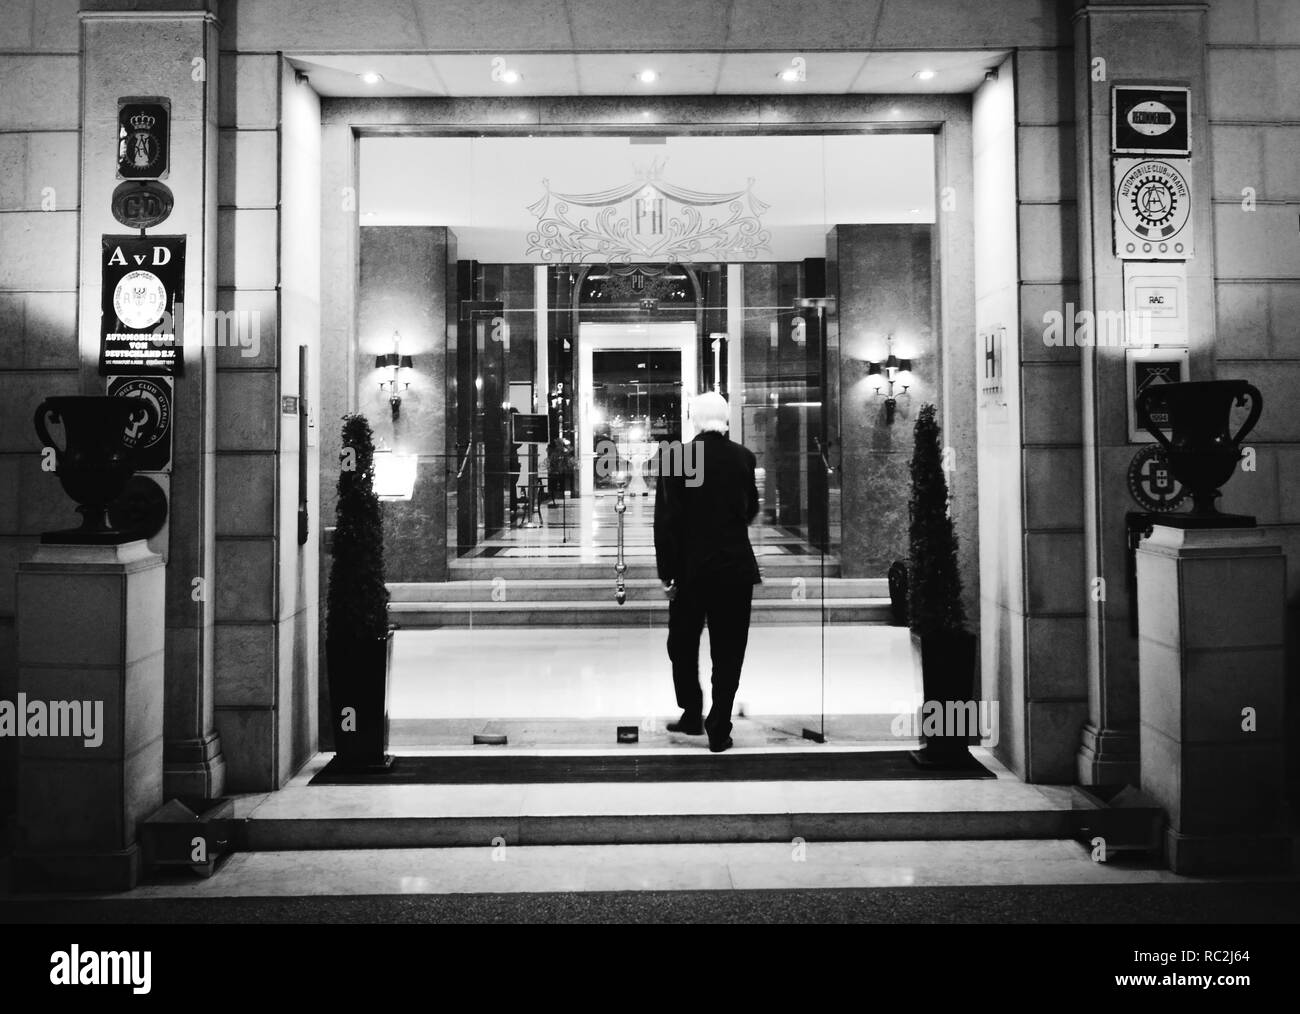 Fachada principal de la entrada del famoso hotel palacio que fue frecuentado por ambos espías alemanes y aliados durante la segunda guerra mundial, así como Ian Fleming Foto de stock